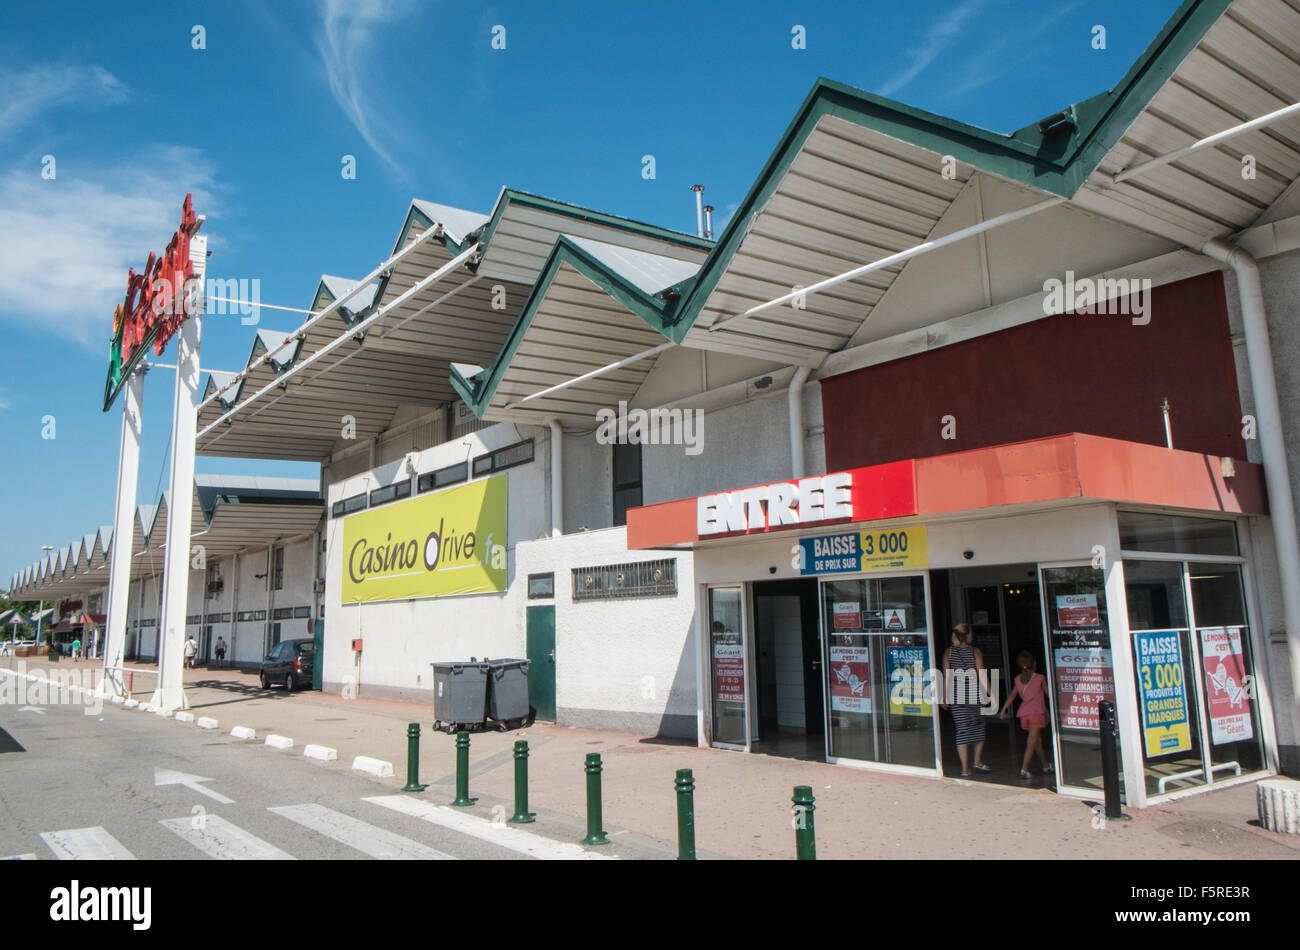 At Geant Casino Supermarket Banque d'image et photos - Alamy